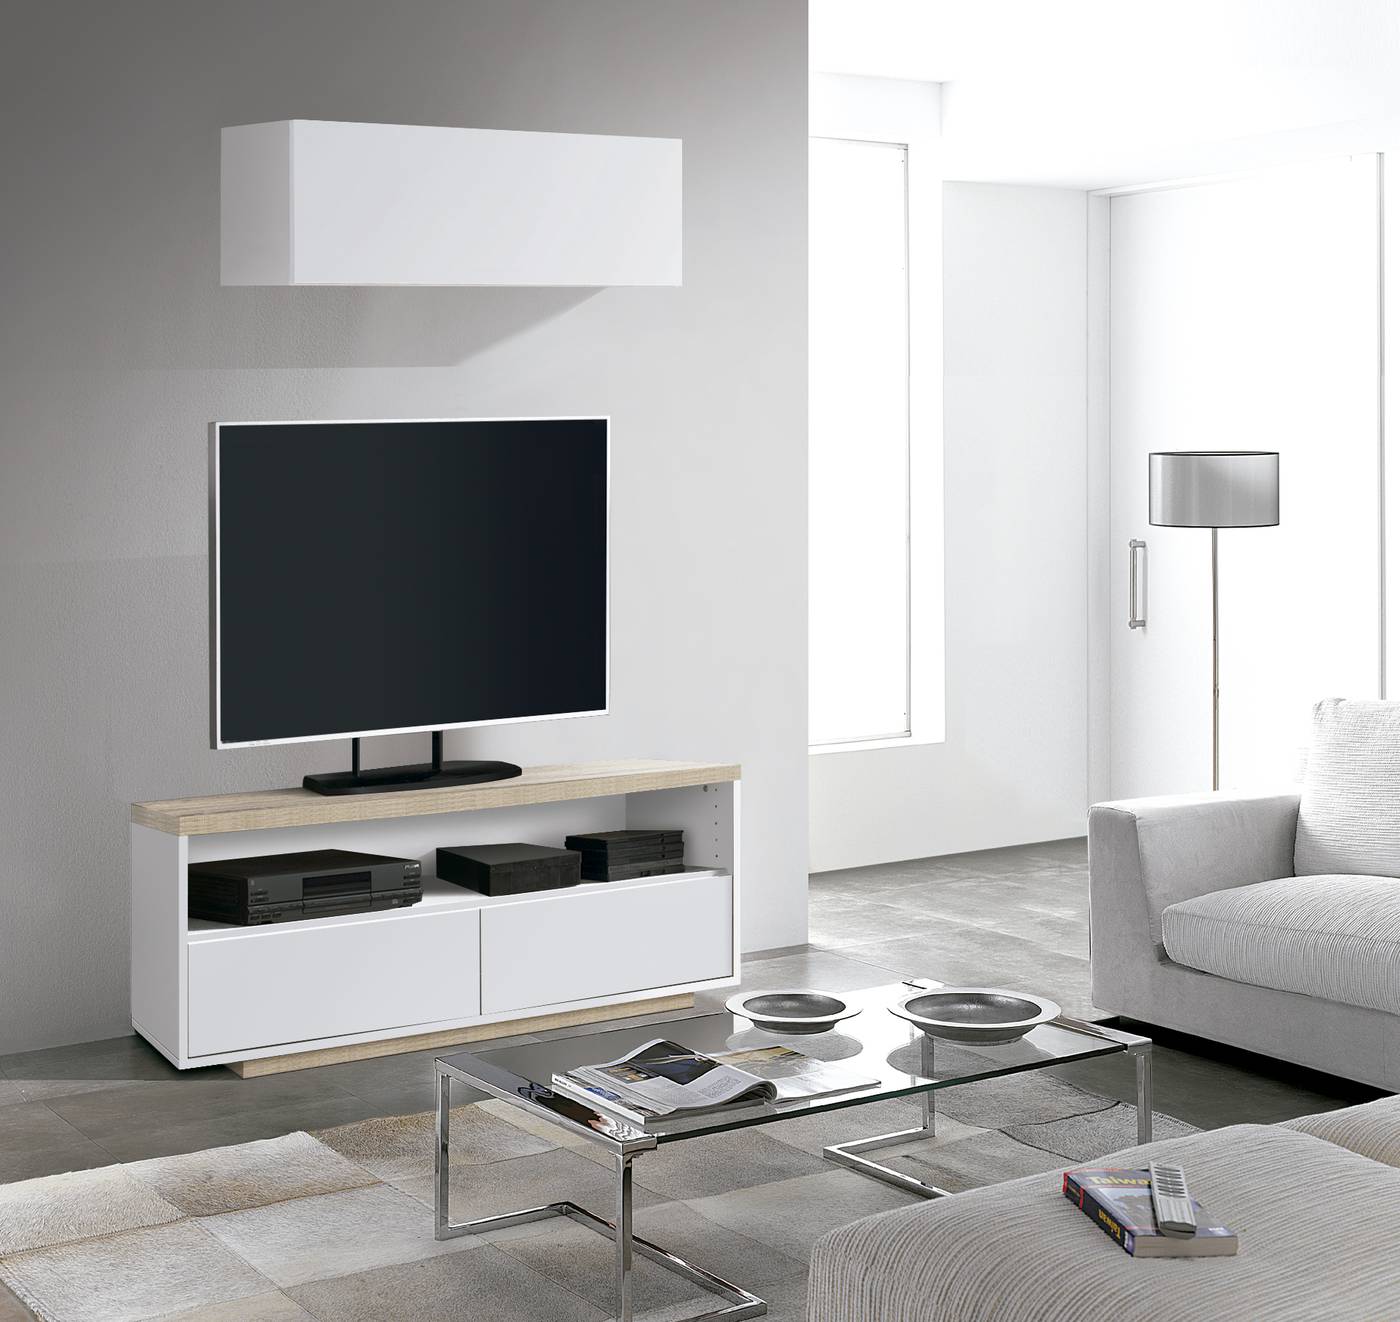 Mueble de TV de 2 cajones y un hueco. Acabado color Blanco combinado en roble cambrian